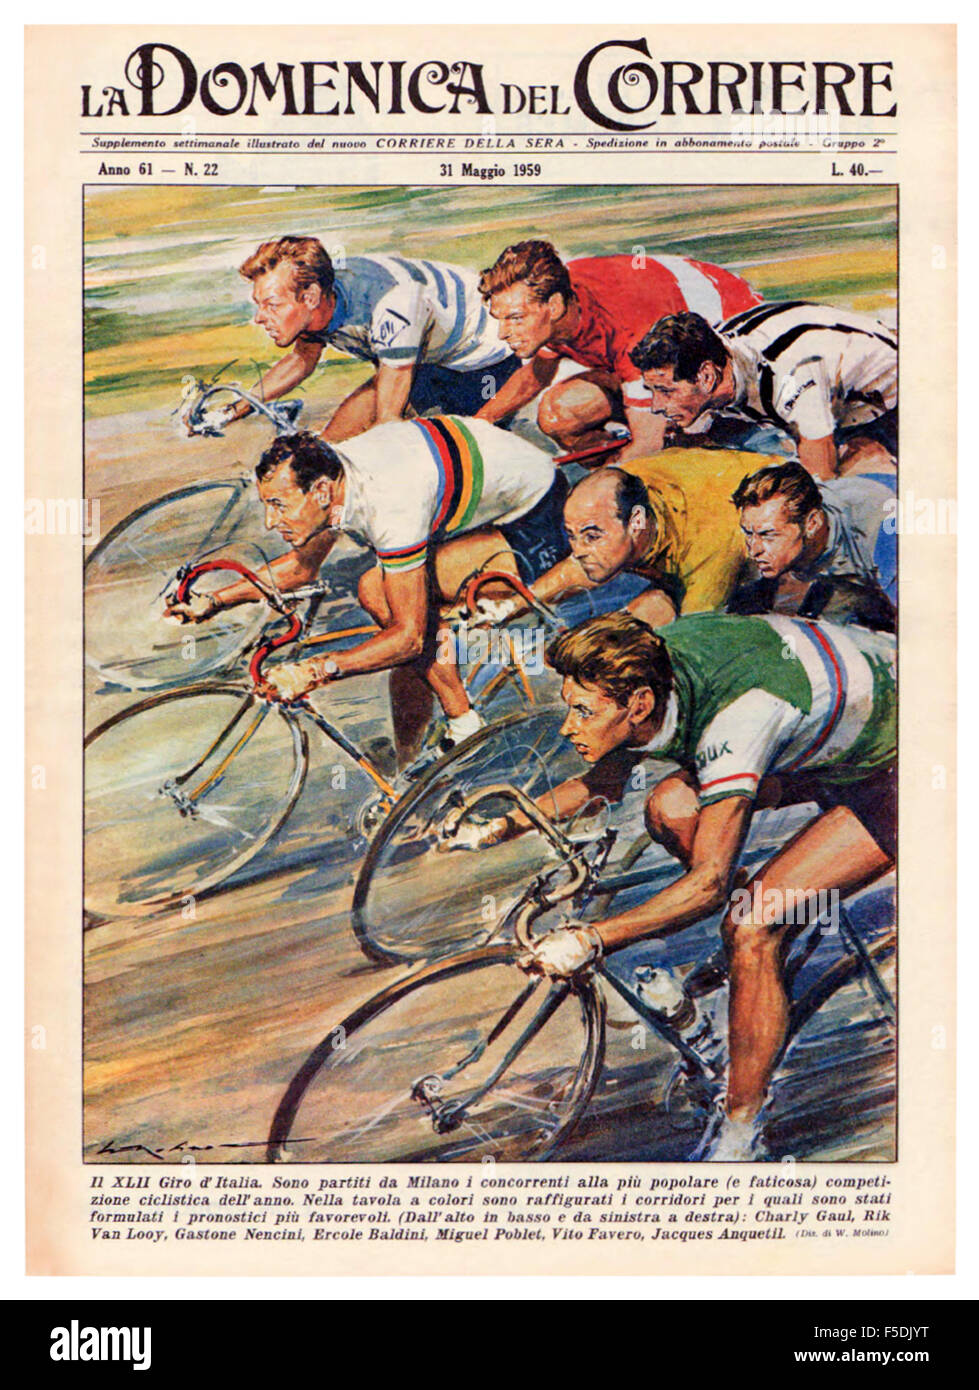 Portada de 'La Domenica del Corriere' 31 de mayo de 1959 presentando una ilustración por Walter Molino (1915-1997) de pilotos compitiendo en el 42º Giro d'Italia (Tour de Italia) carrera ciclista. La imagen muestra los principales competidores como partieron desde Milán; de arriba a abajo y de izquierda a derecha: Charly Gaul (ganador); Rik Van Loony; Gastone Nencini, Ercole Baldini; Miguel Poblet, Vito Favero y Jacques Anquetil. Foto de stock